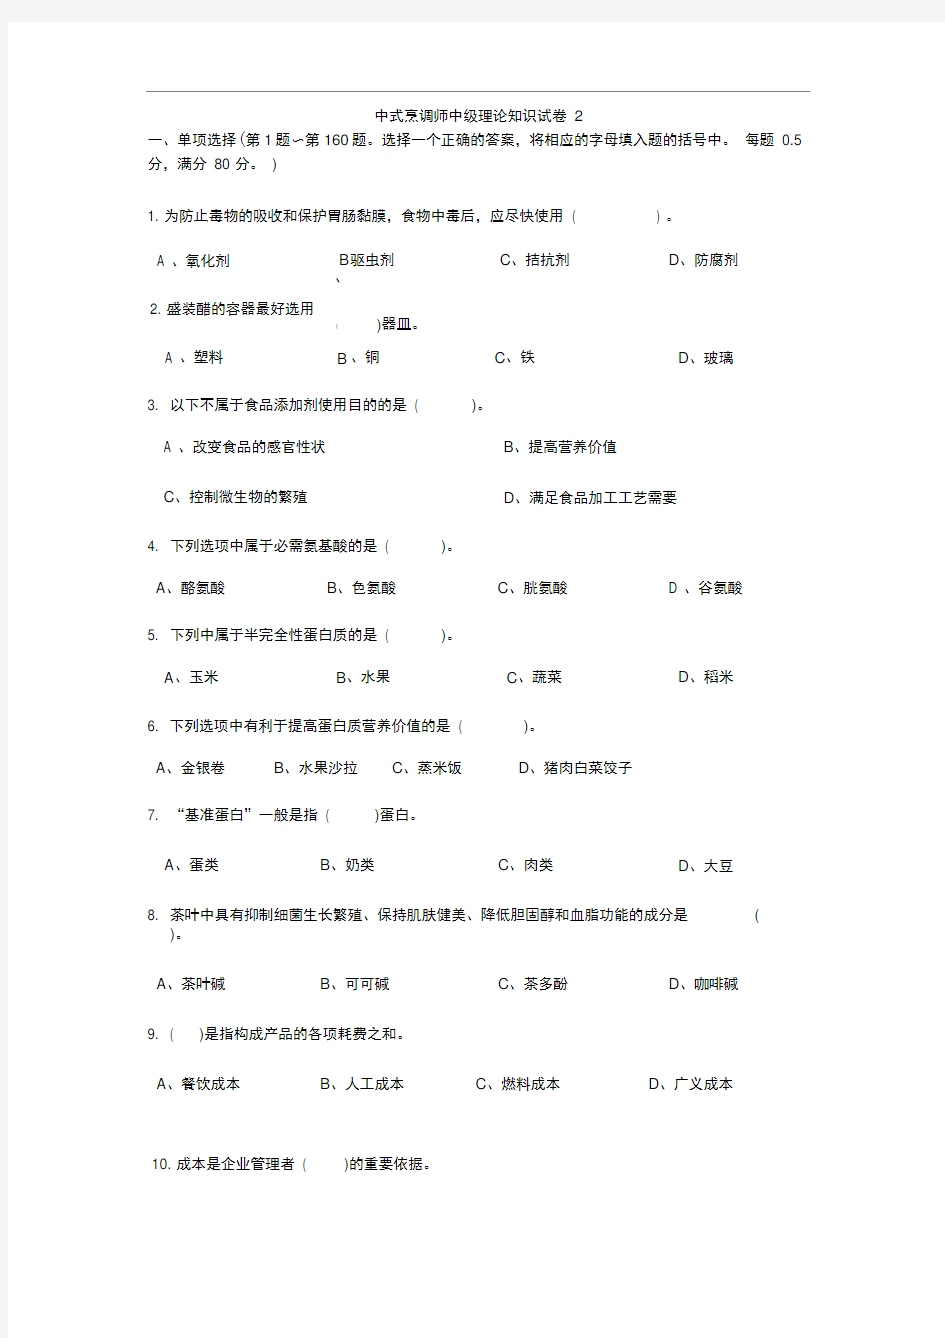 中式烹调师中级理论知识试卷2